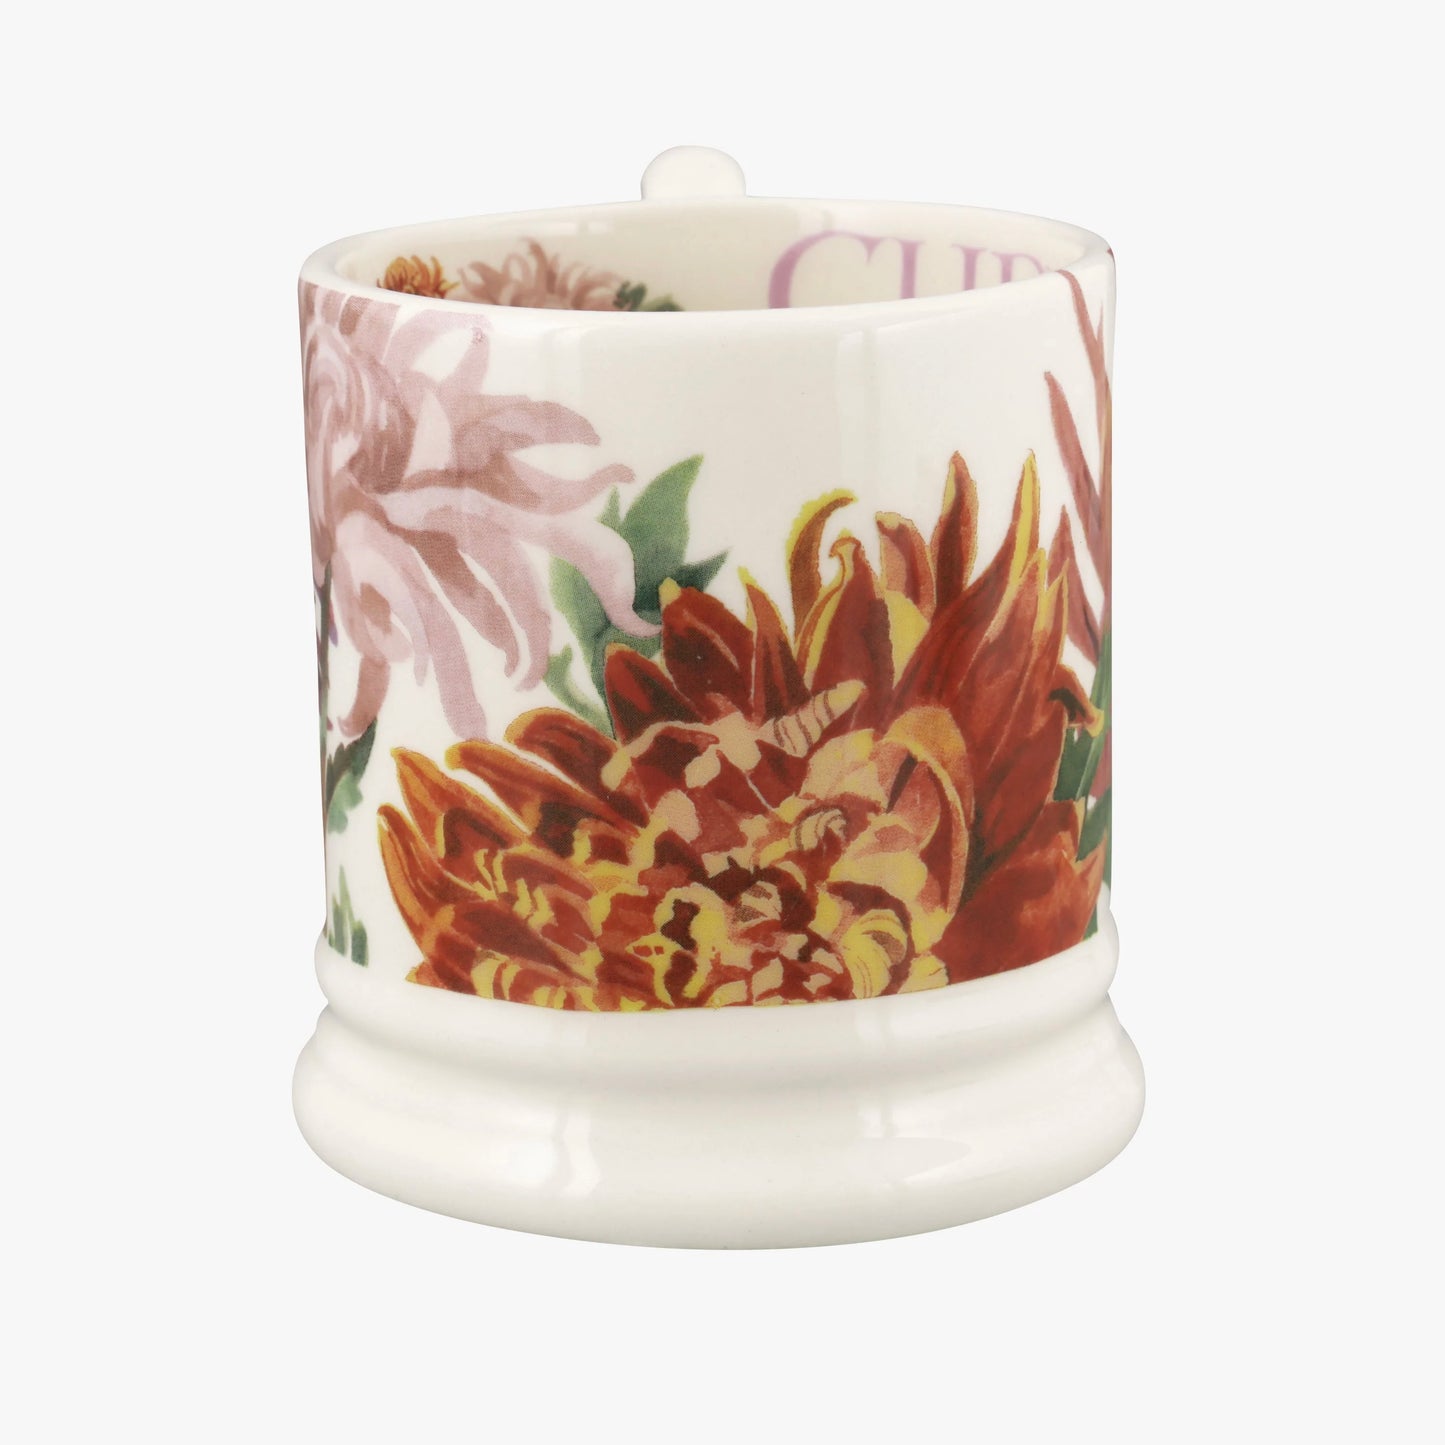 Chrysanthemum 1/2 Pint Mug